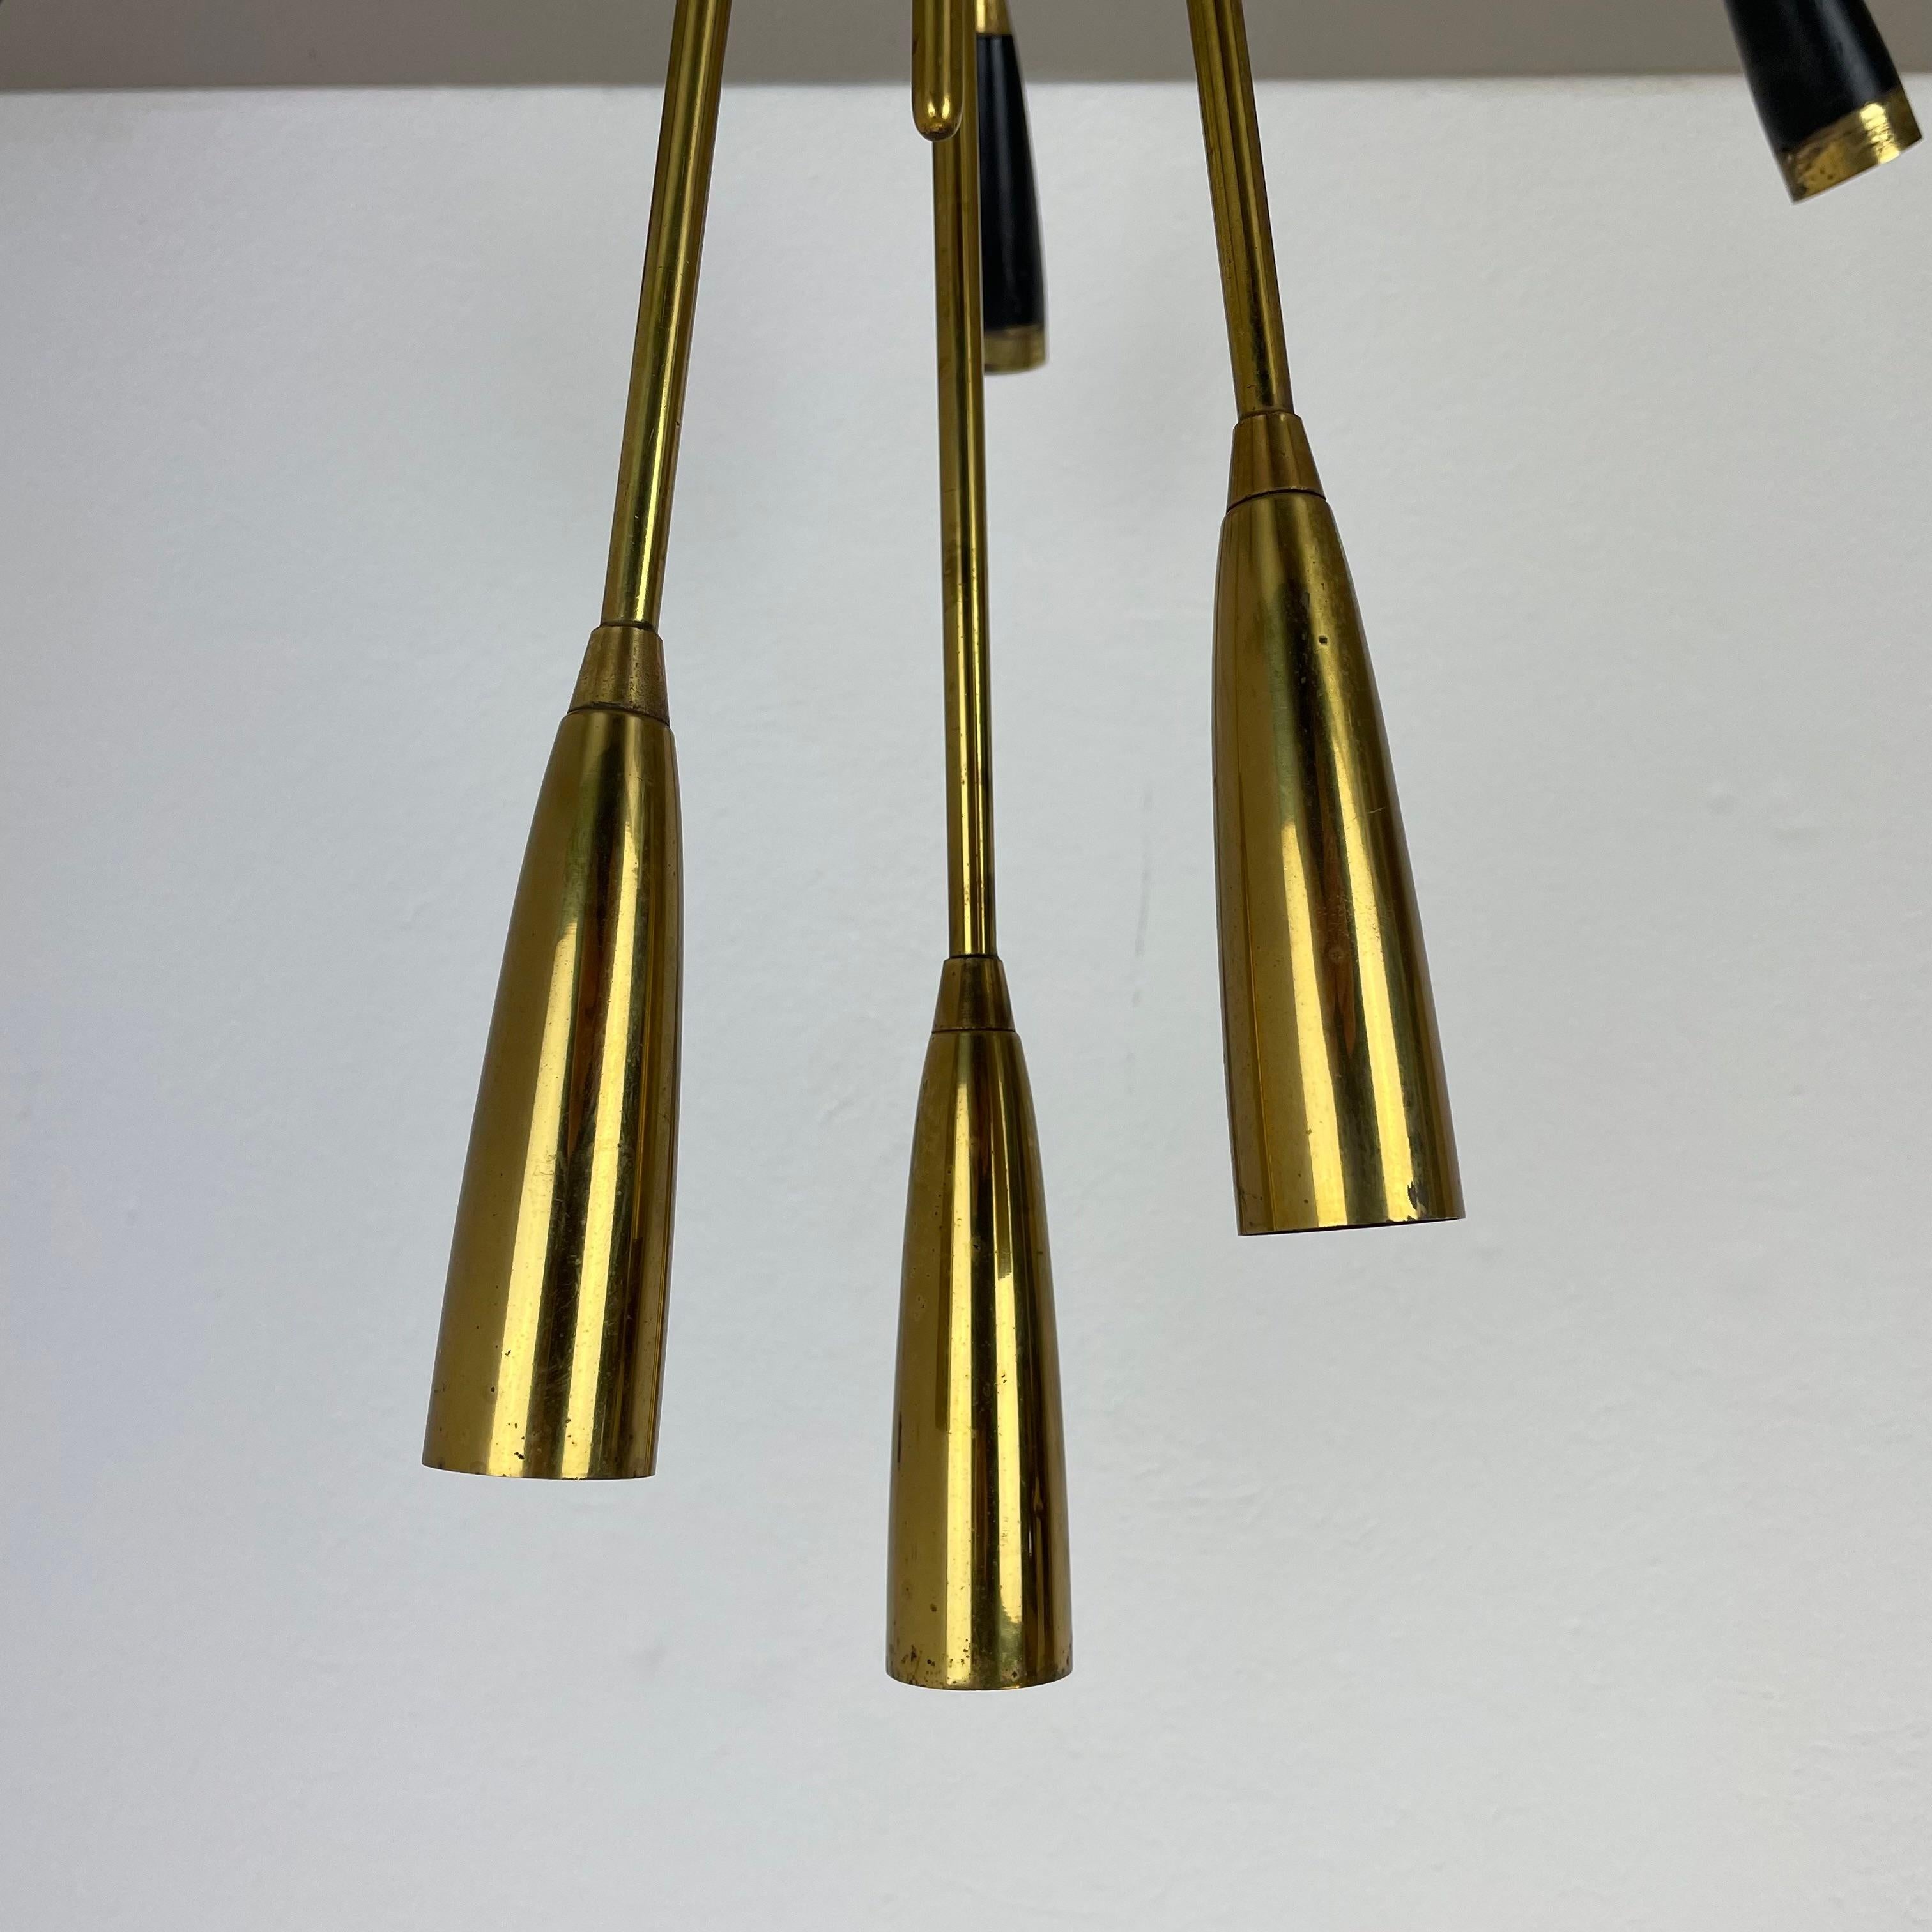 xl 9 arm Brass Stilnovo Gino Sarfatti Style Ceiling Light Flushmount Italy 1950 For Sale 1